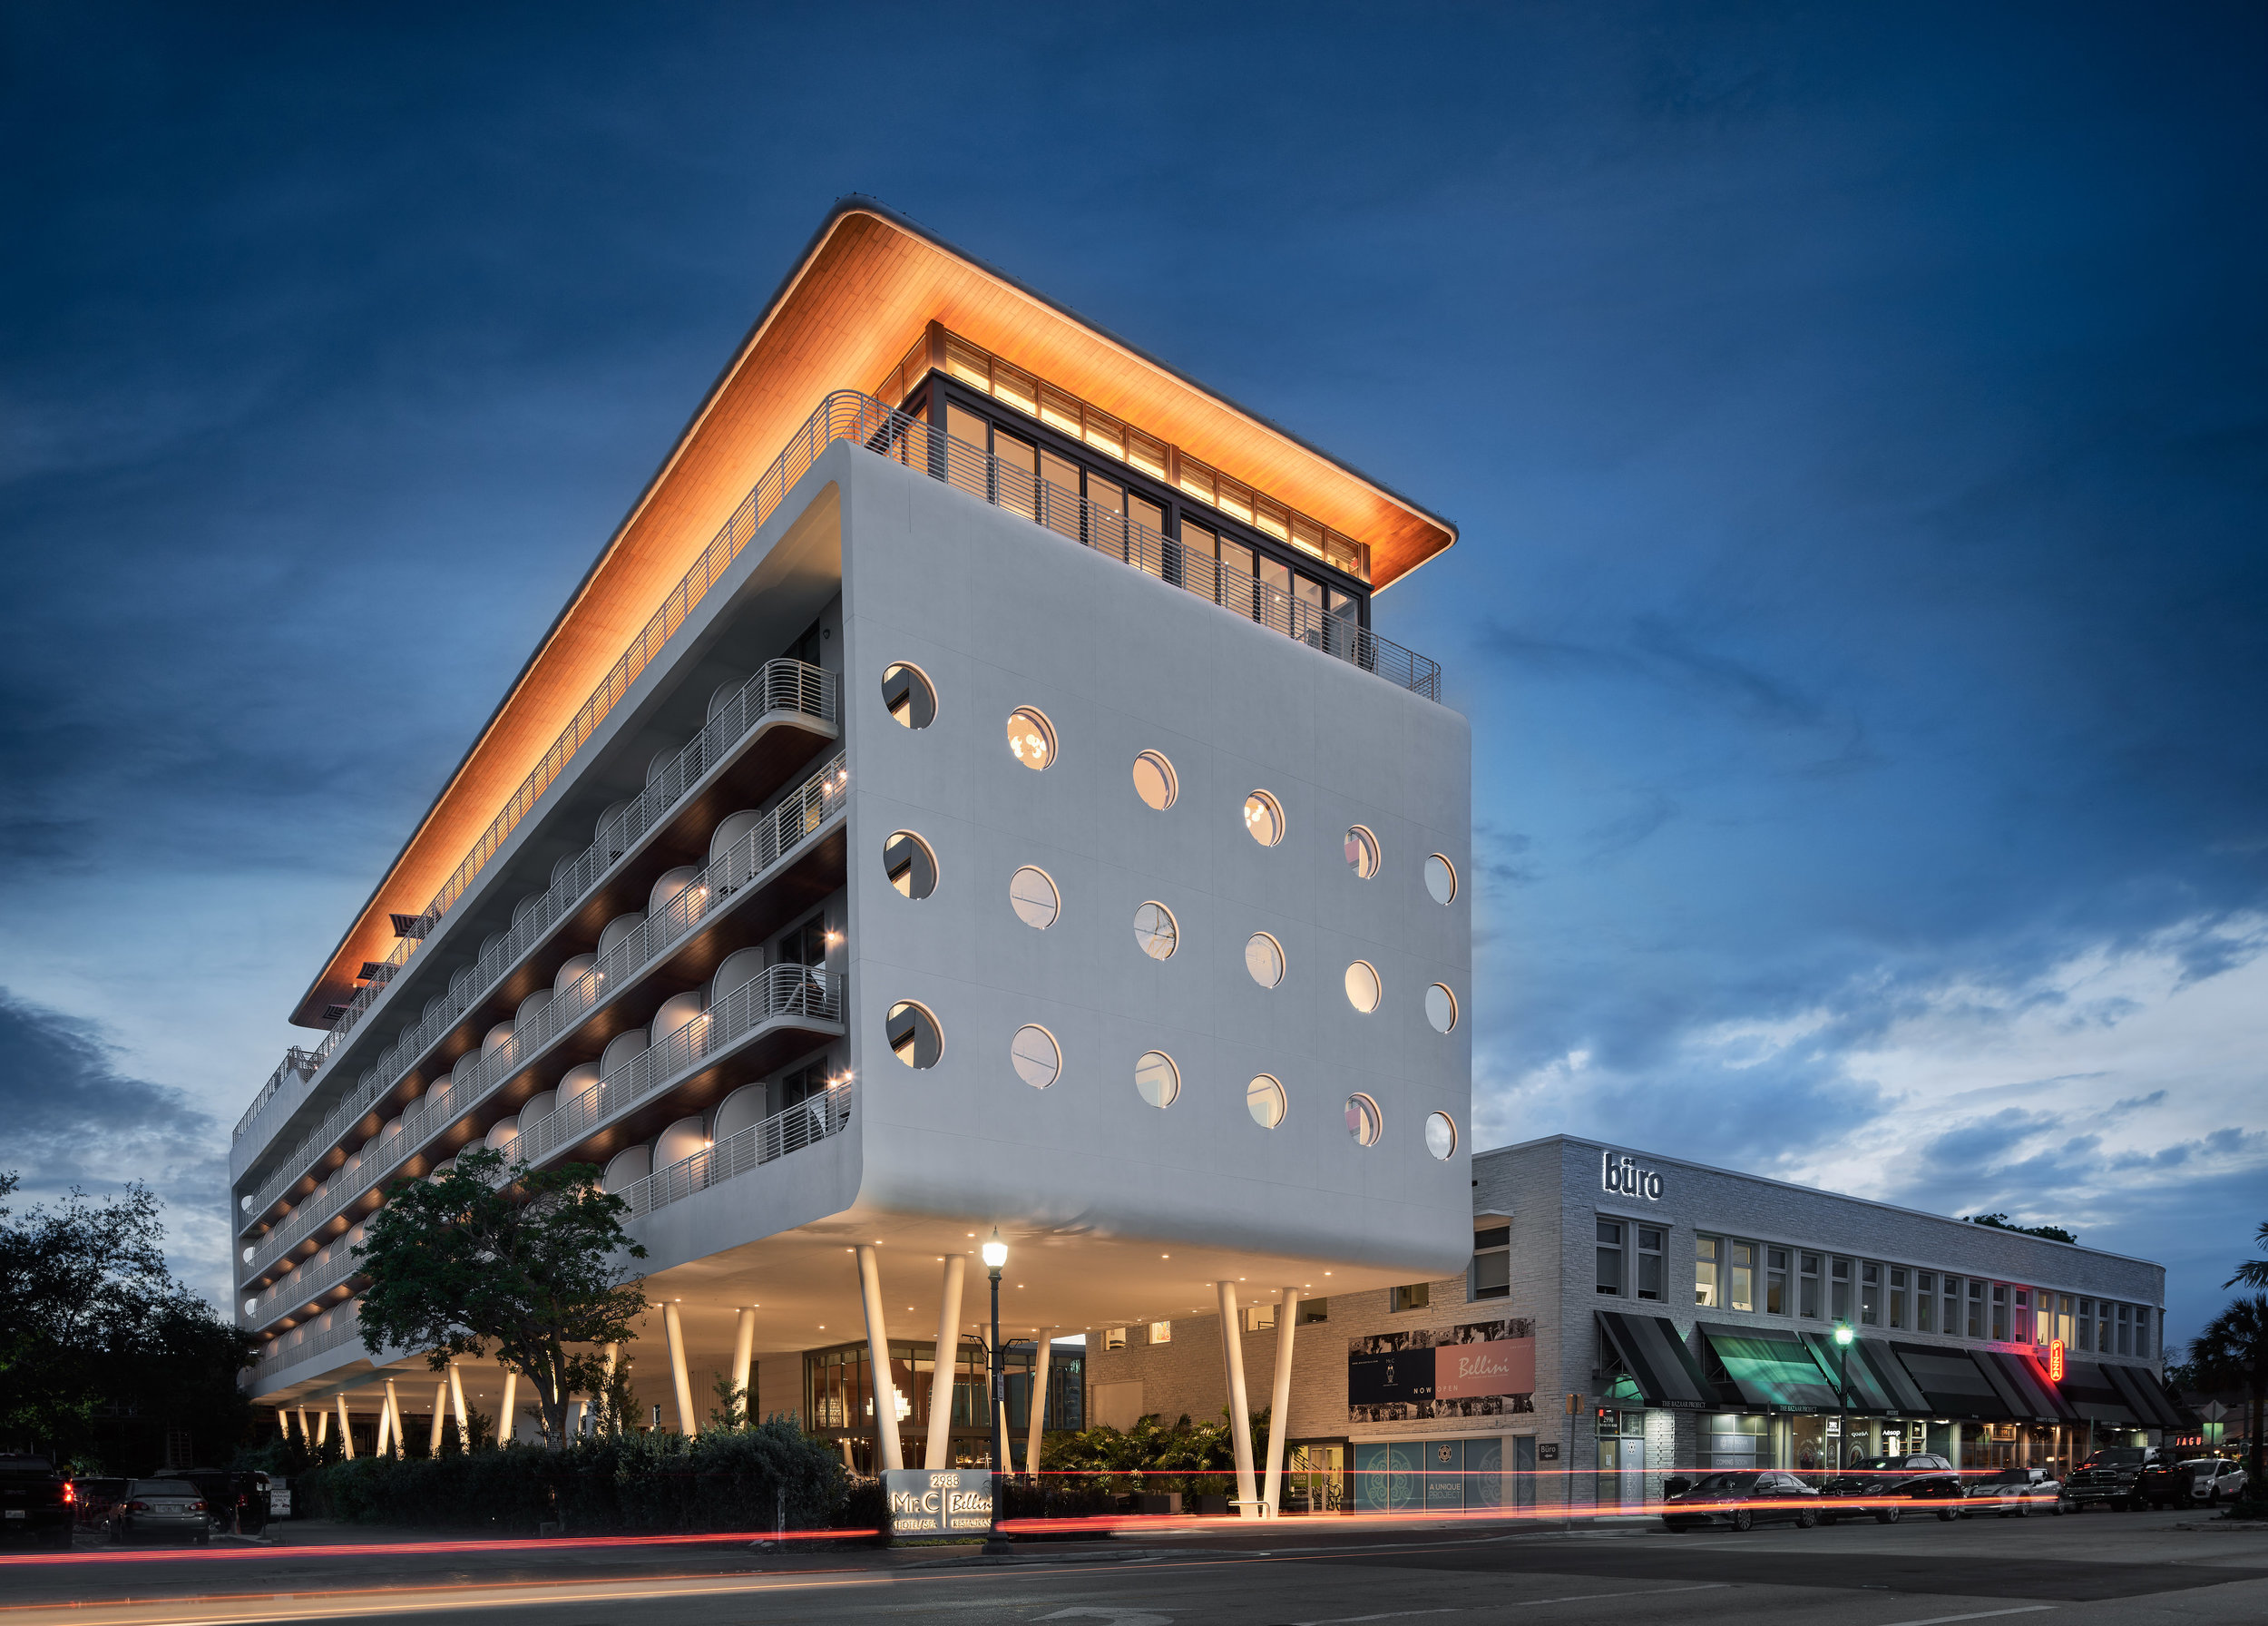 Mr. C Hotel: Coconut Grove, FL - Arquitectonica